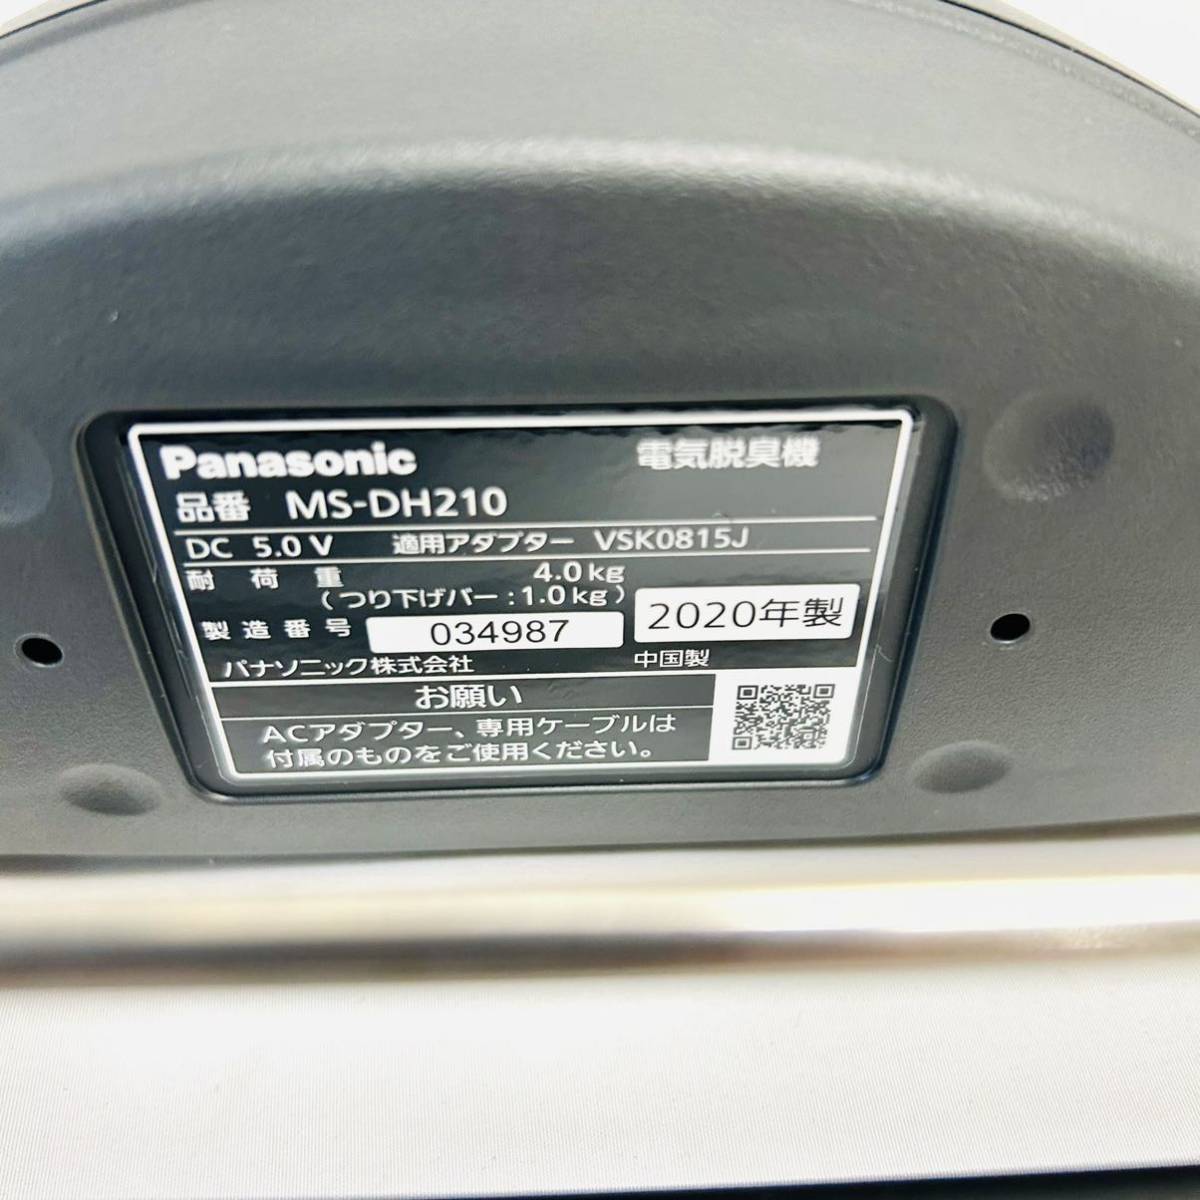 100%正規品 新品未使用 Panasoni電気脱臭機ハンガー MS-DH210-K